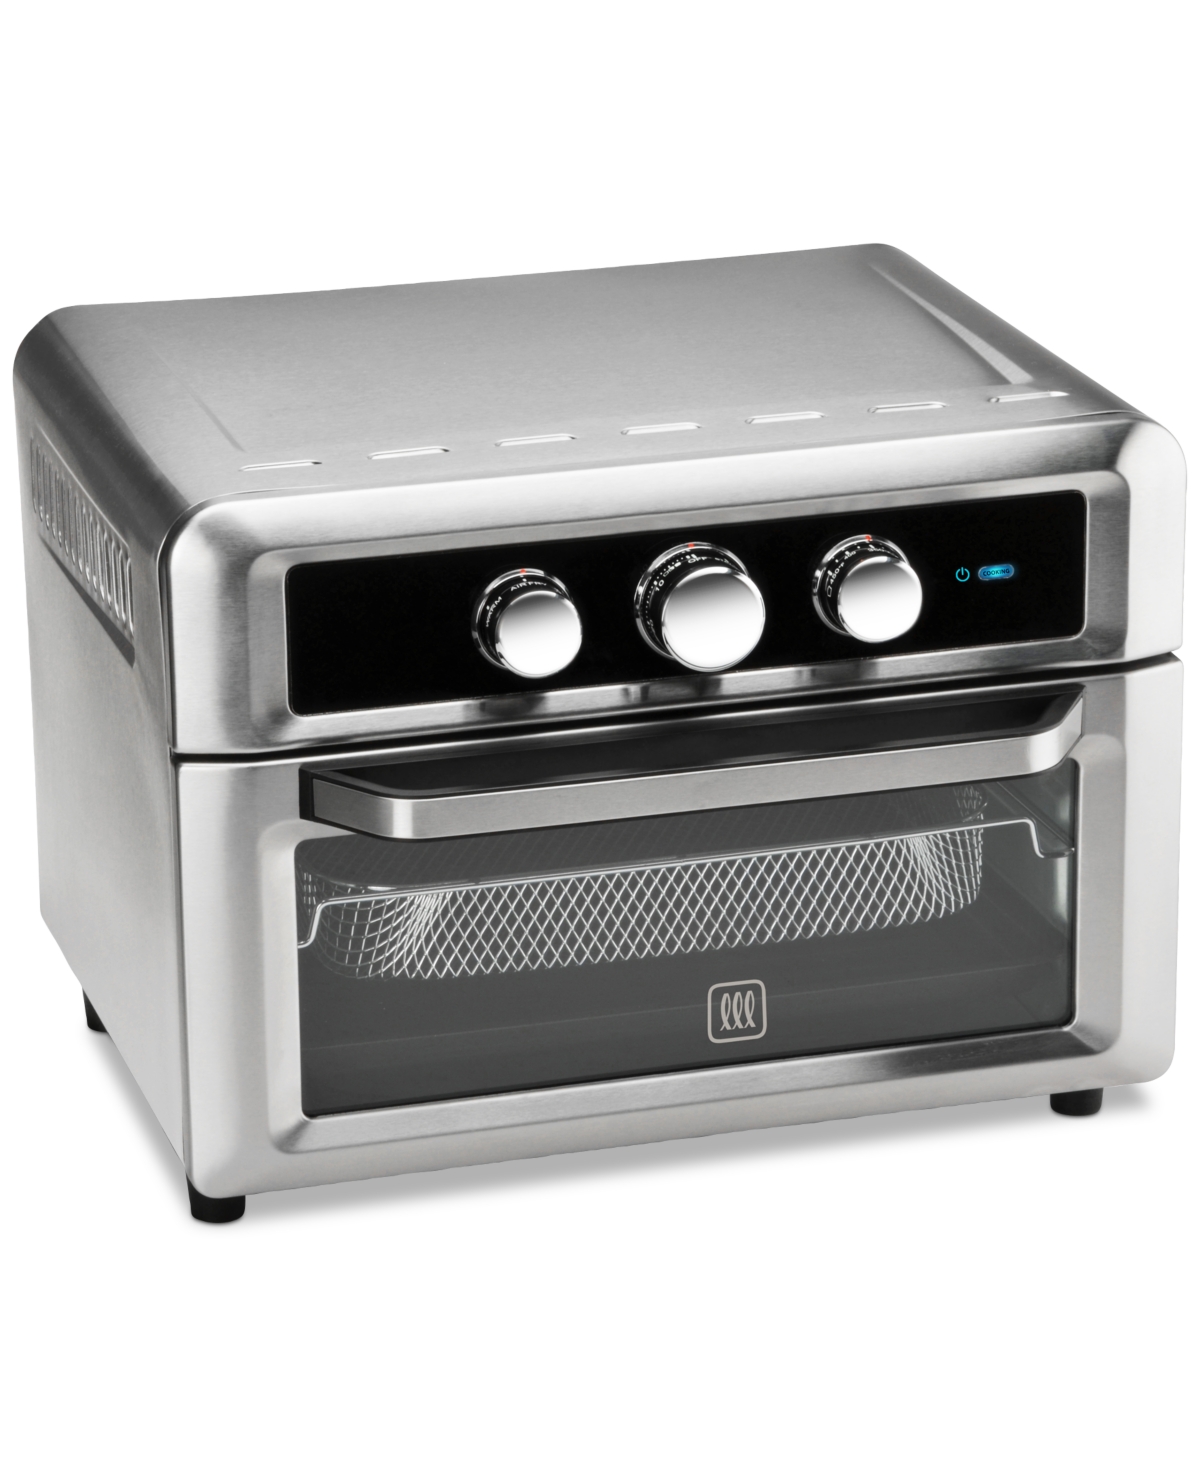 Toastmaster, Kitchen, Toastmaster 5liter Air Fryer Model Tm15af With  Adjustable Temperature Set